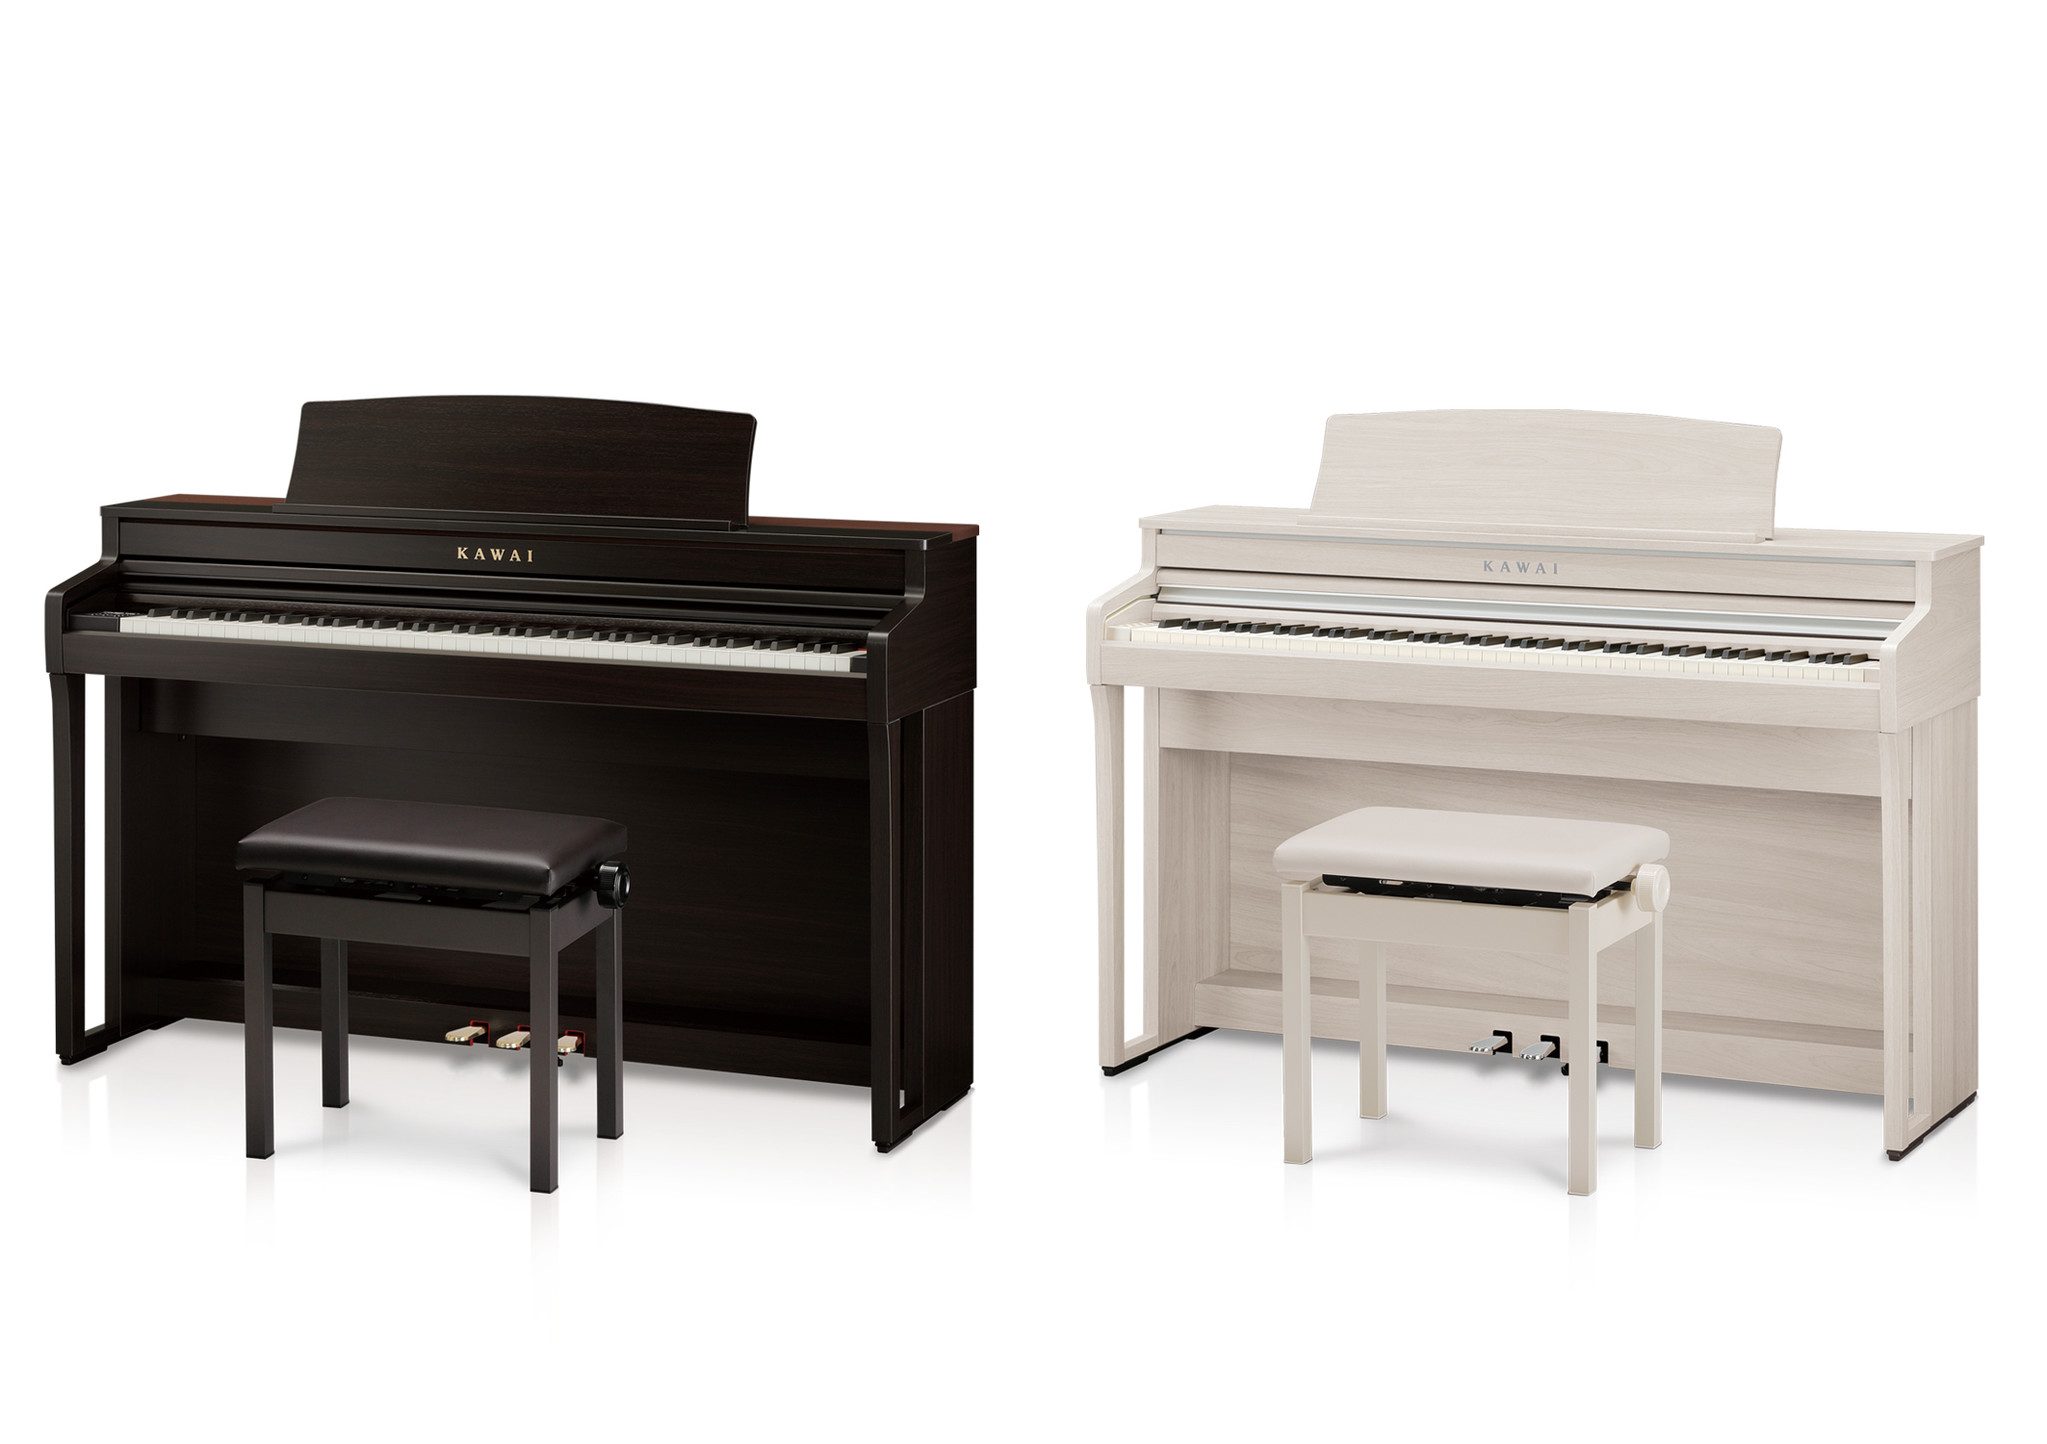 カワイデジタルピアノ Ca59 Ca49 新発売 株式会社河合楽器製作所のプレスリリース